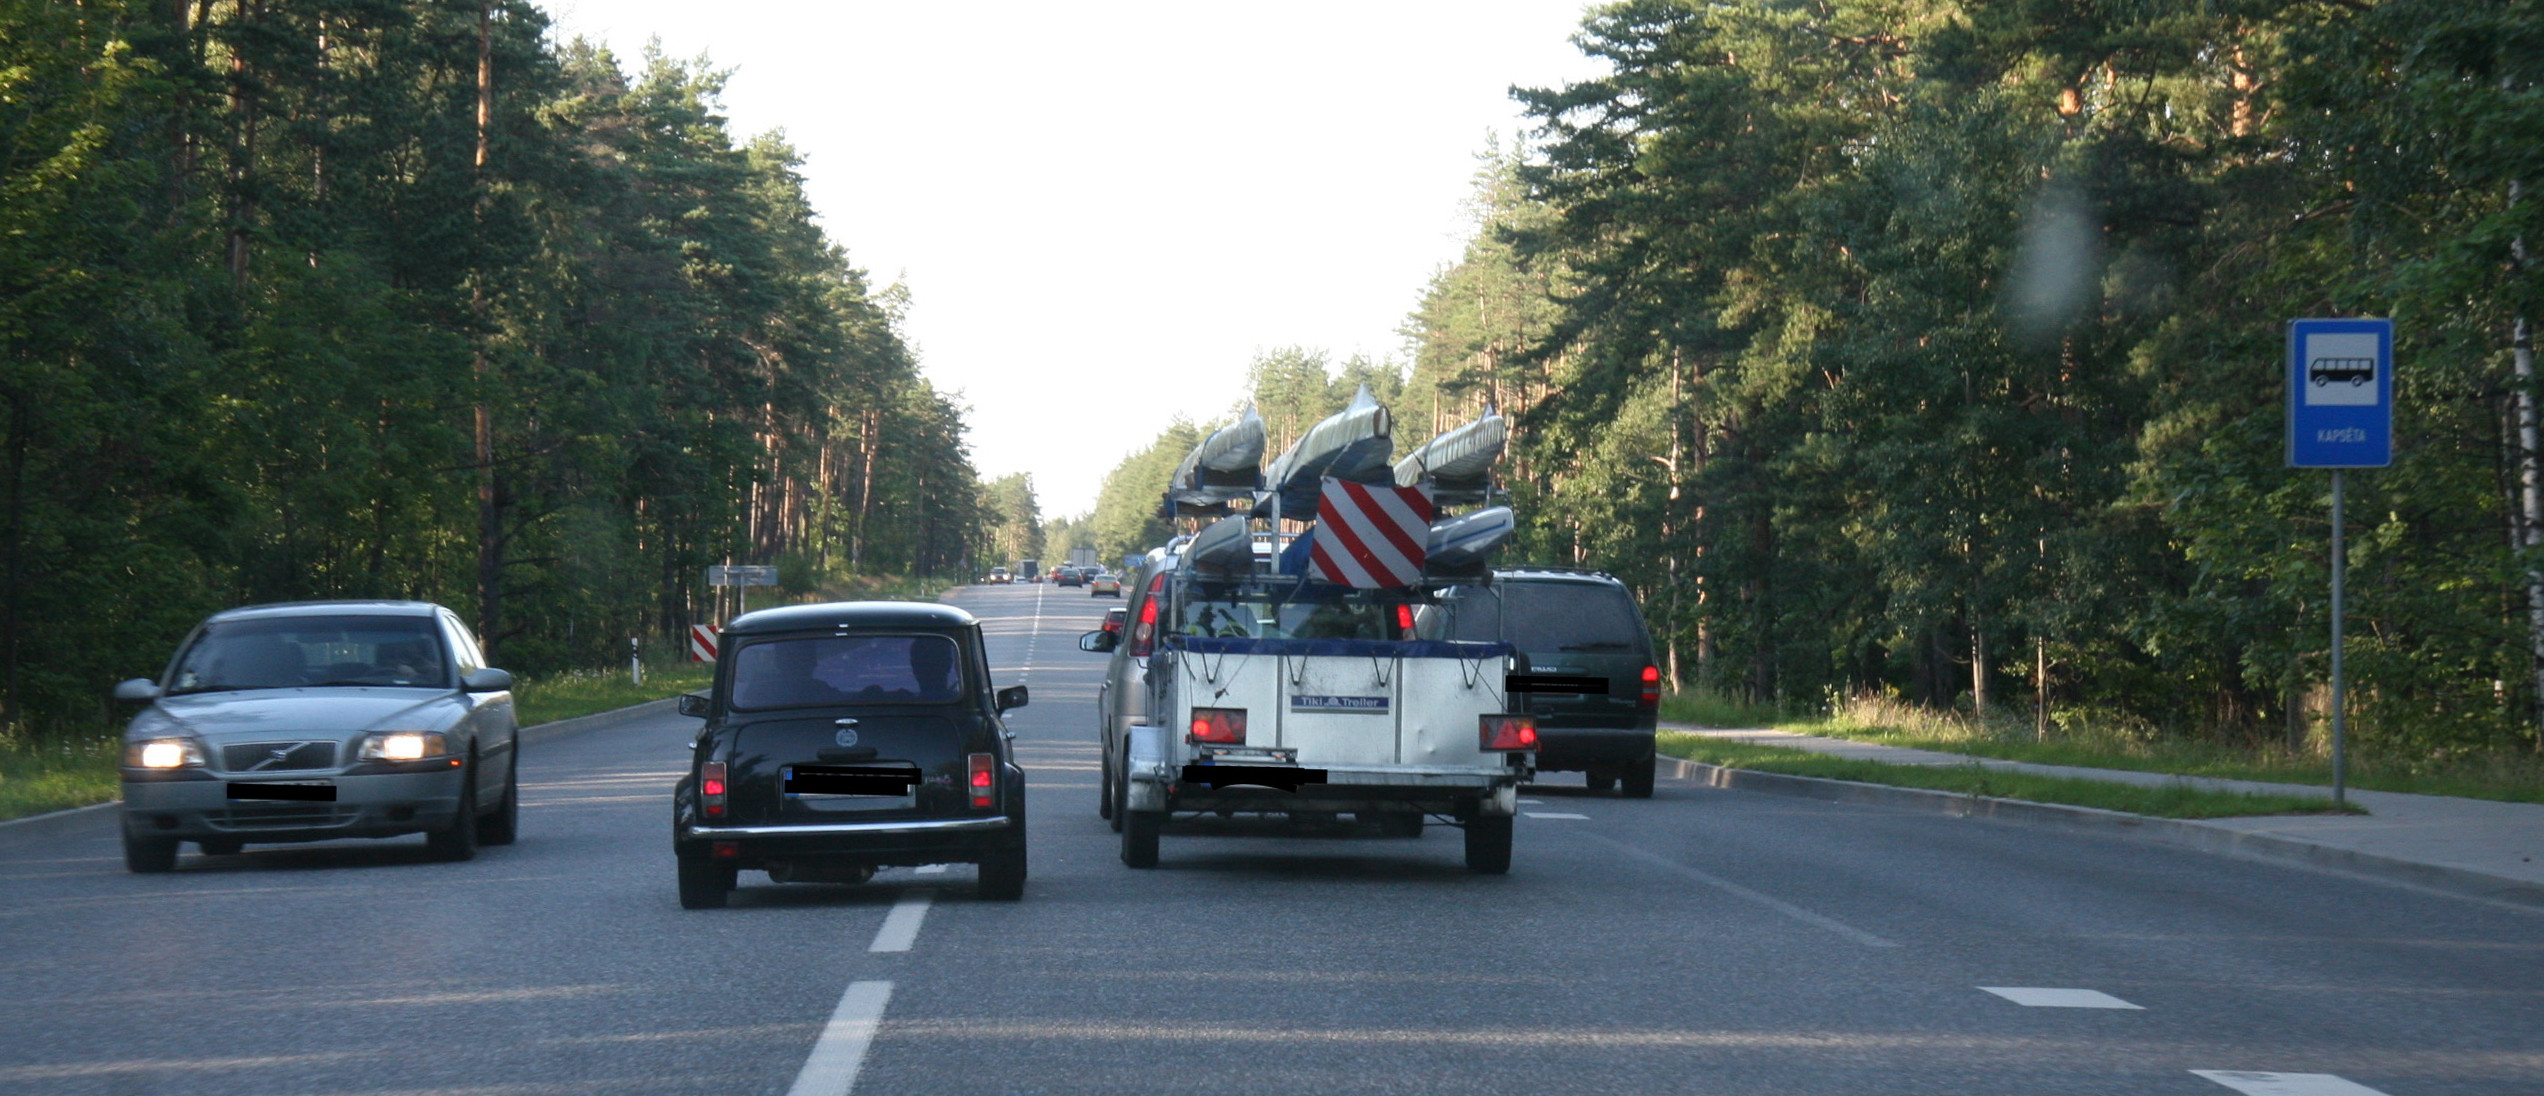 liiklusohutus eestis